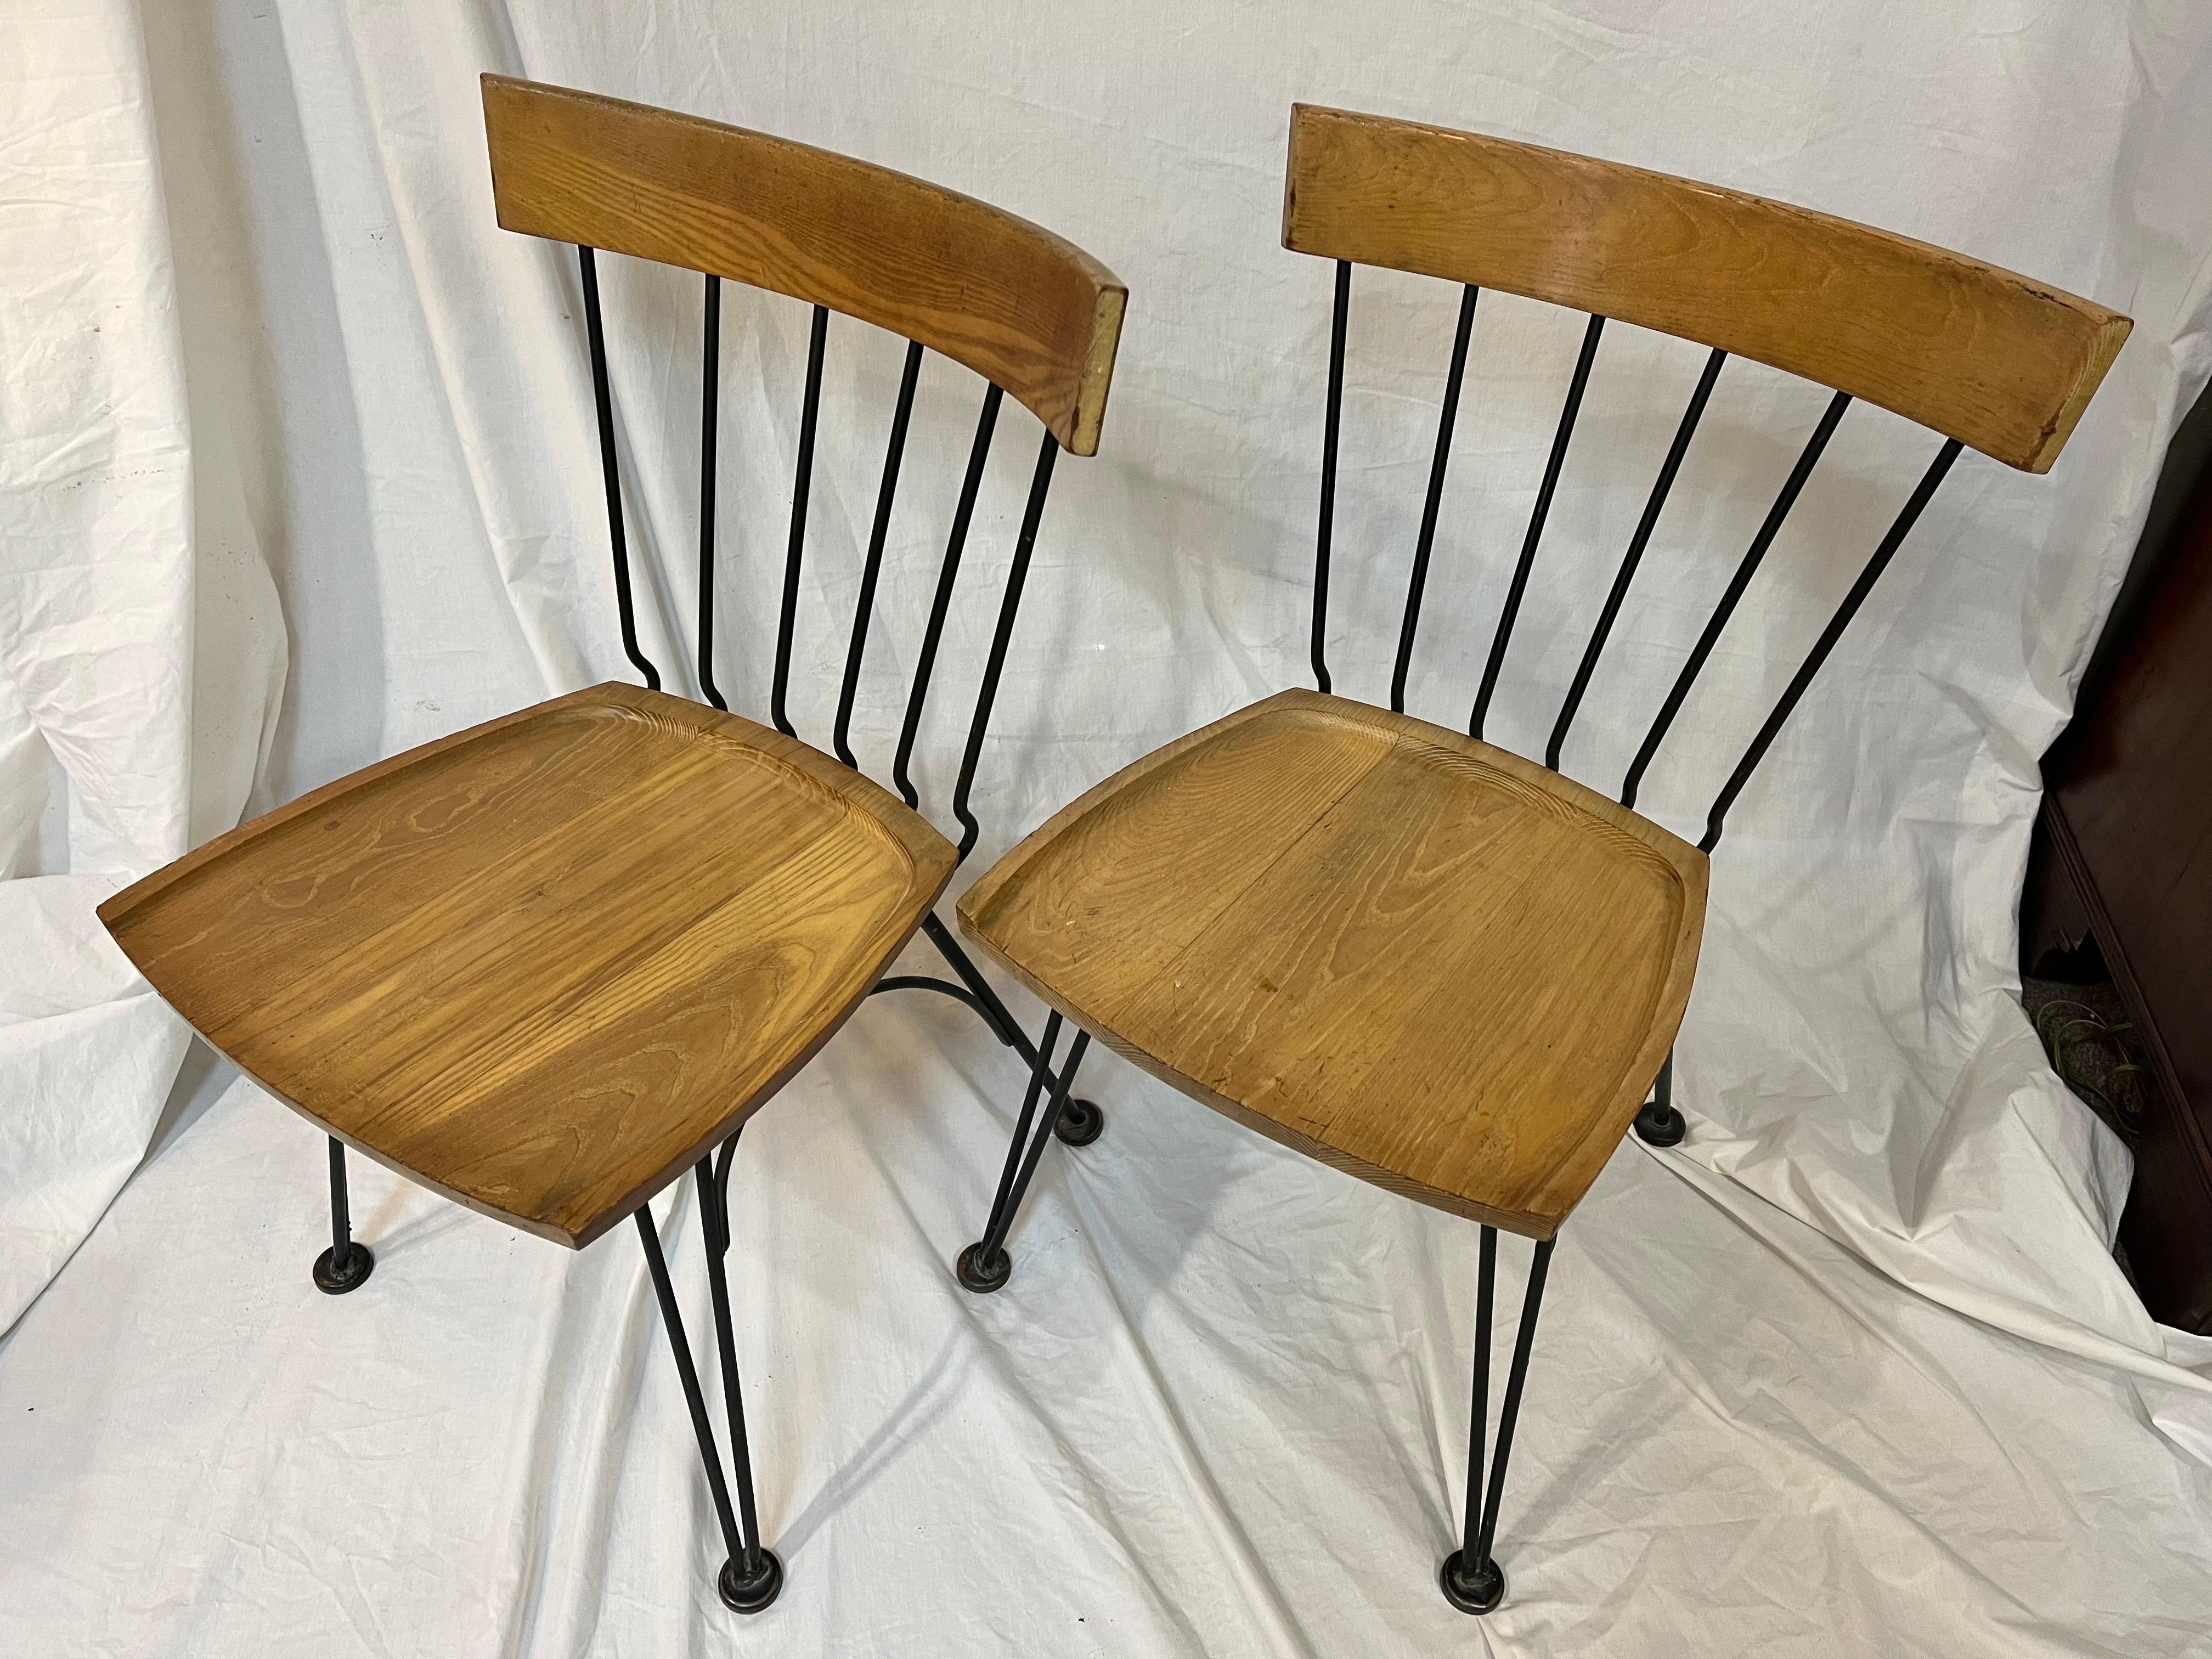 Paire de chaises Allegro de Lee Woodard, de style moderne du milieu du siècle dernier, datant du début des années 1950. Cette paire de chaises robustes en bois et en fer est extrêmement confortable et présente toutes les caractéristiques d'un grand